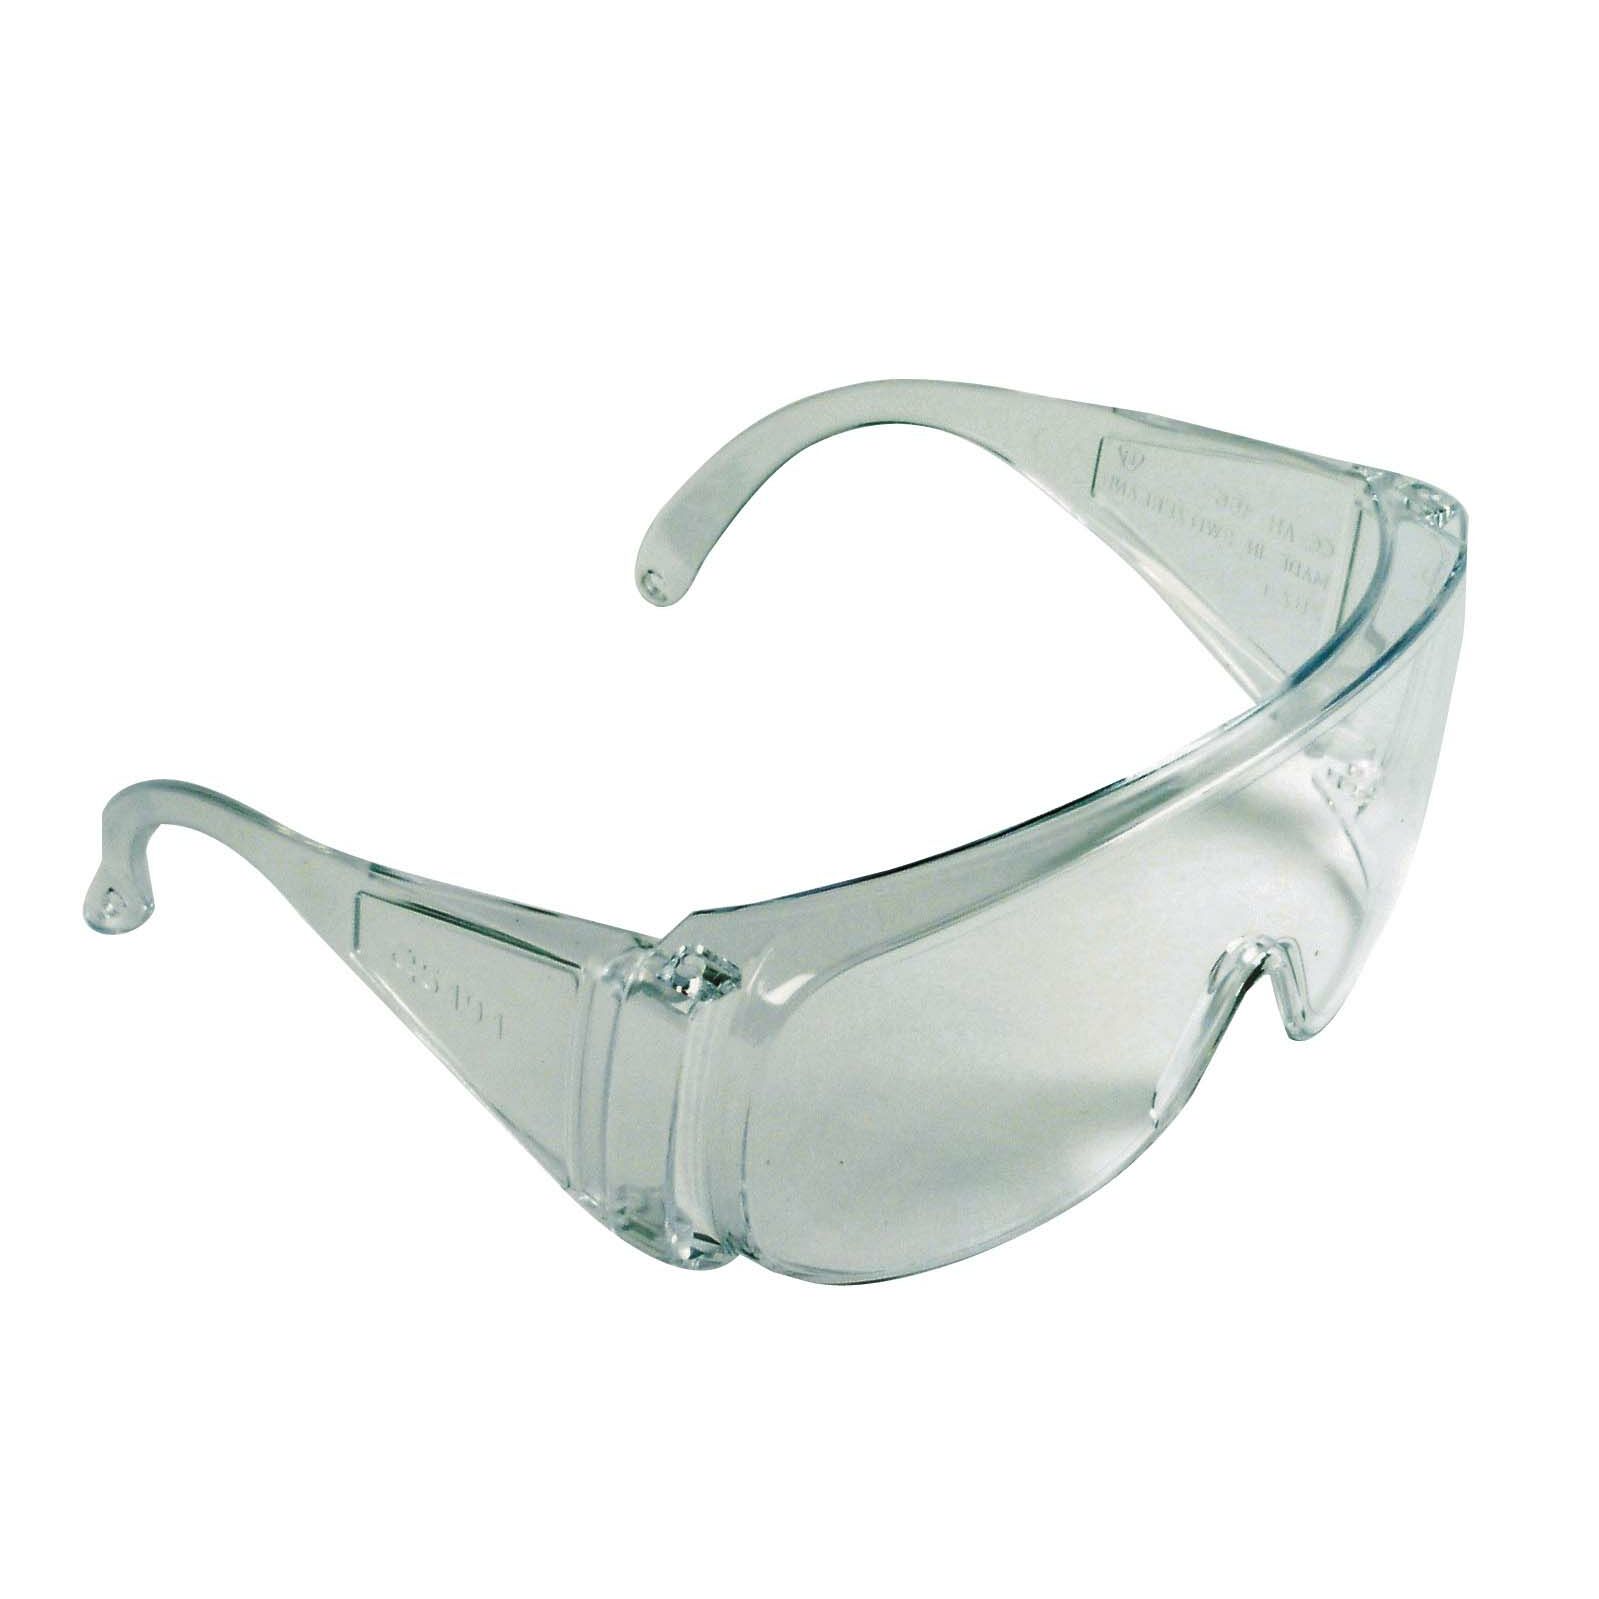 Открытые защитные очки поликарбонат. Очки защитные прозрачные t4p 2803003. Очки защитные биолазер. Очки защитные 304 0-13011. Очки защитные Крафтер.